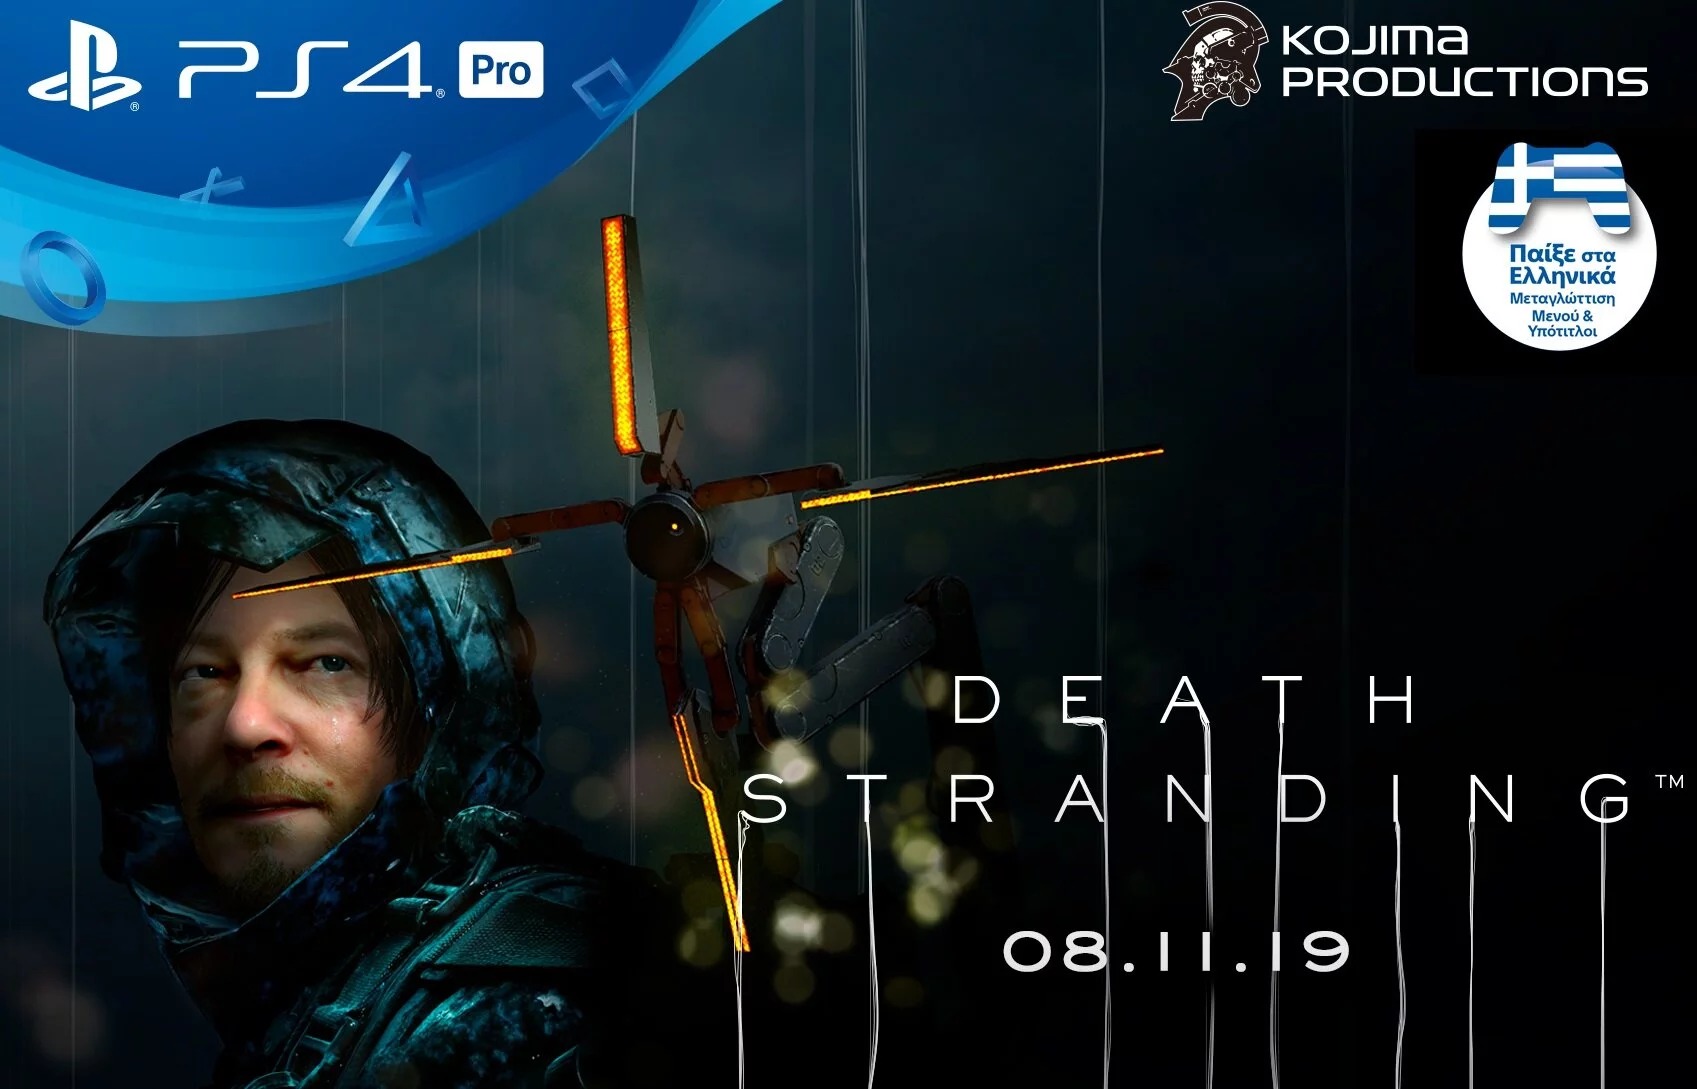 To Death Stranding έρχεται στις 8 Νοεμβρίου 2019 στο PlayStation 4 πλήρως μεταγλωττισμένο